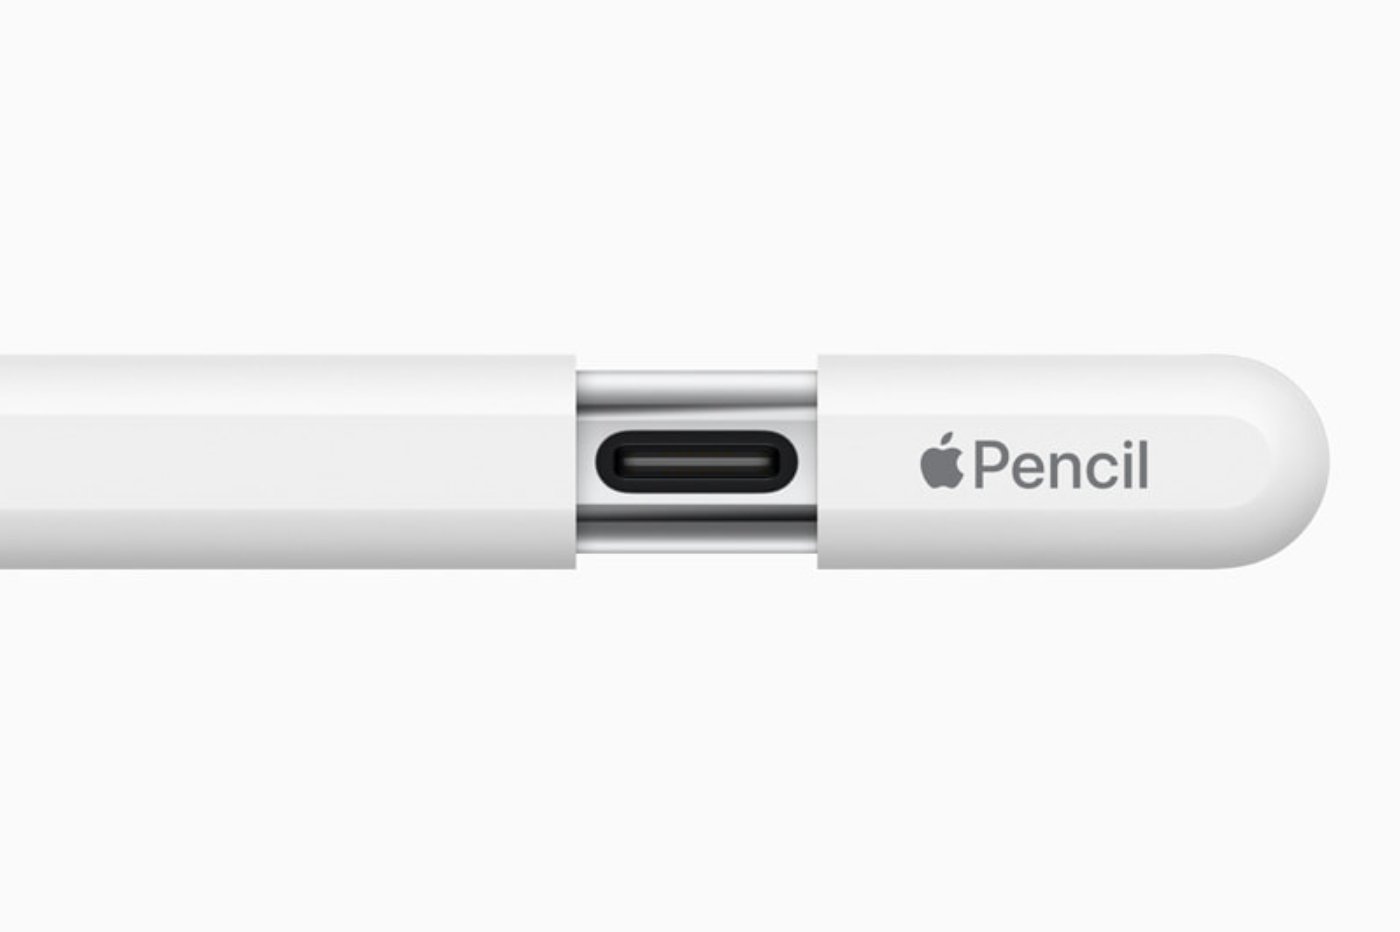 Acheter l'Apple Pencil (2e génération) - Apple (BE)